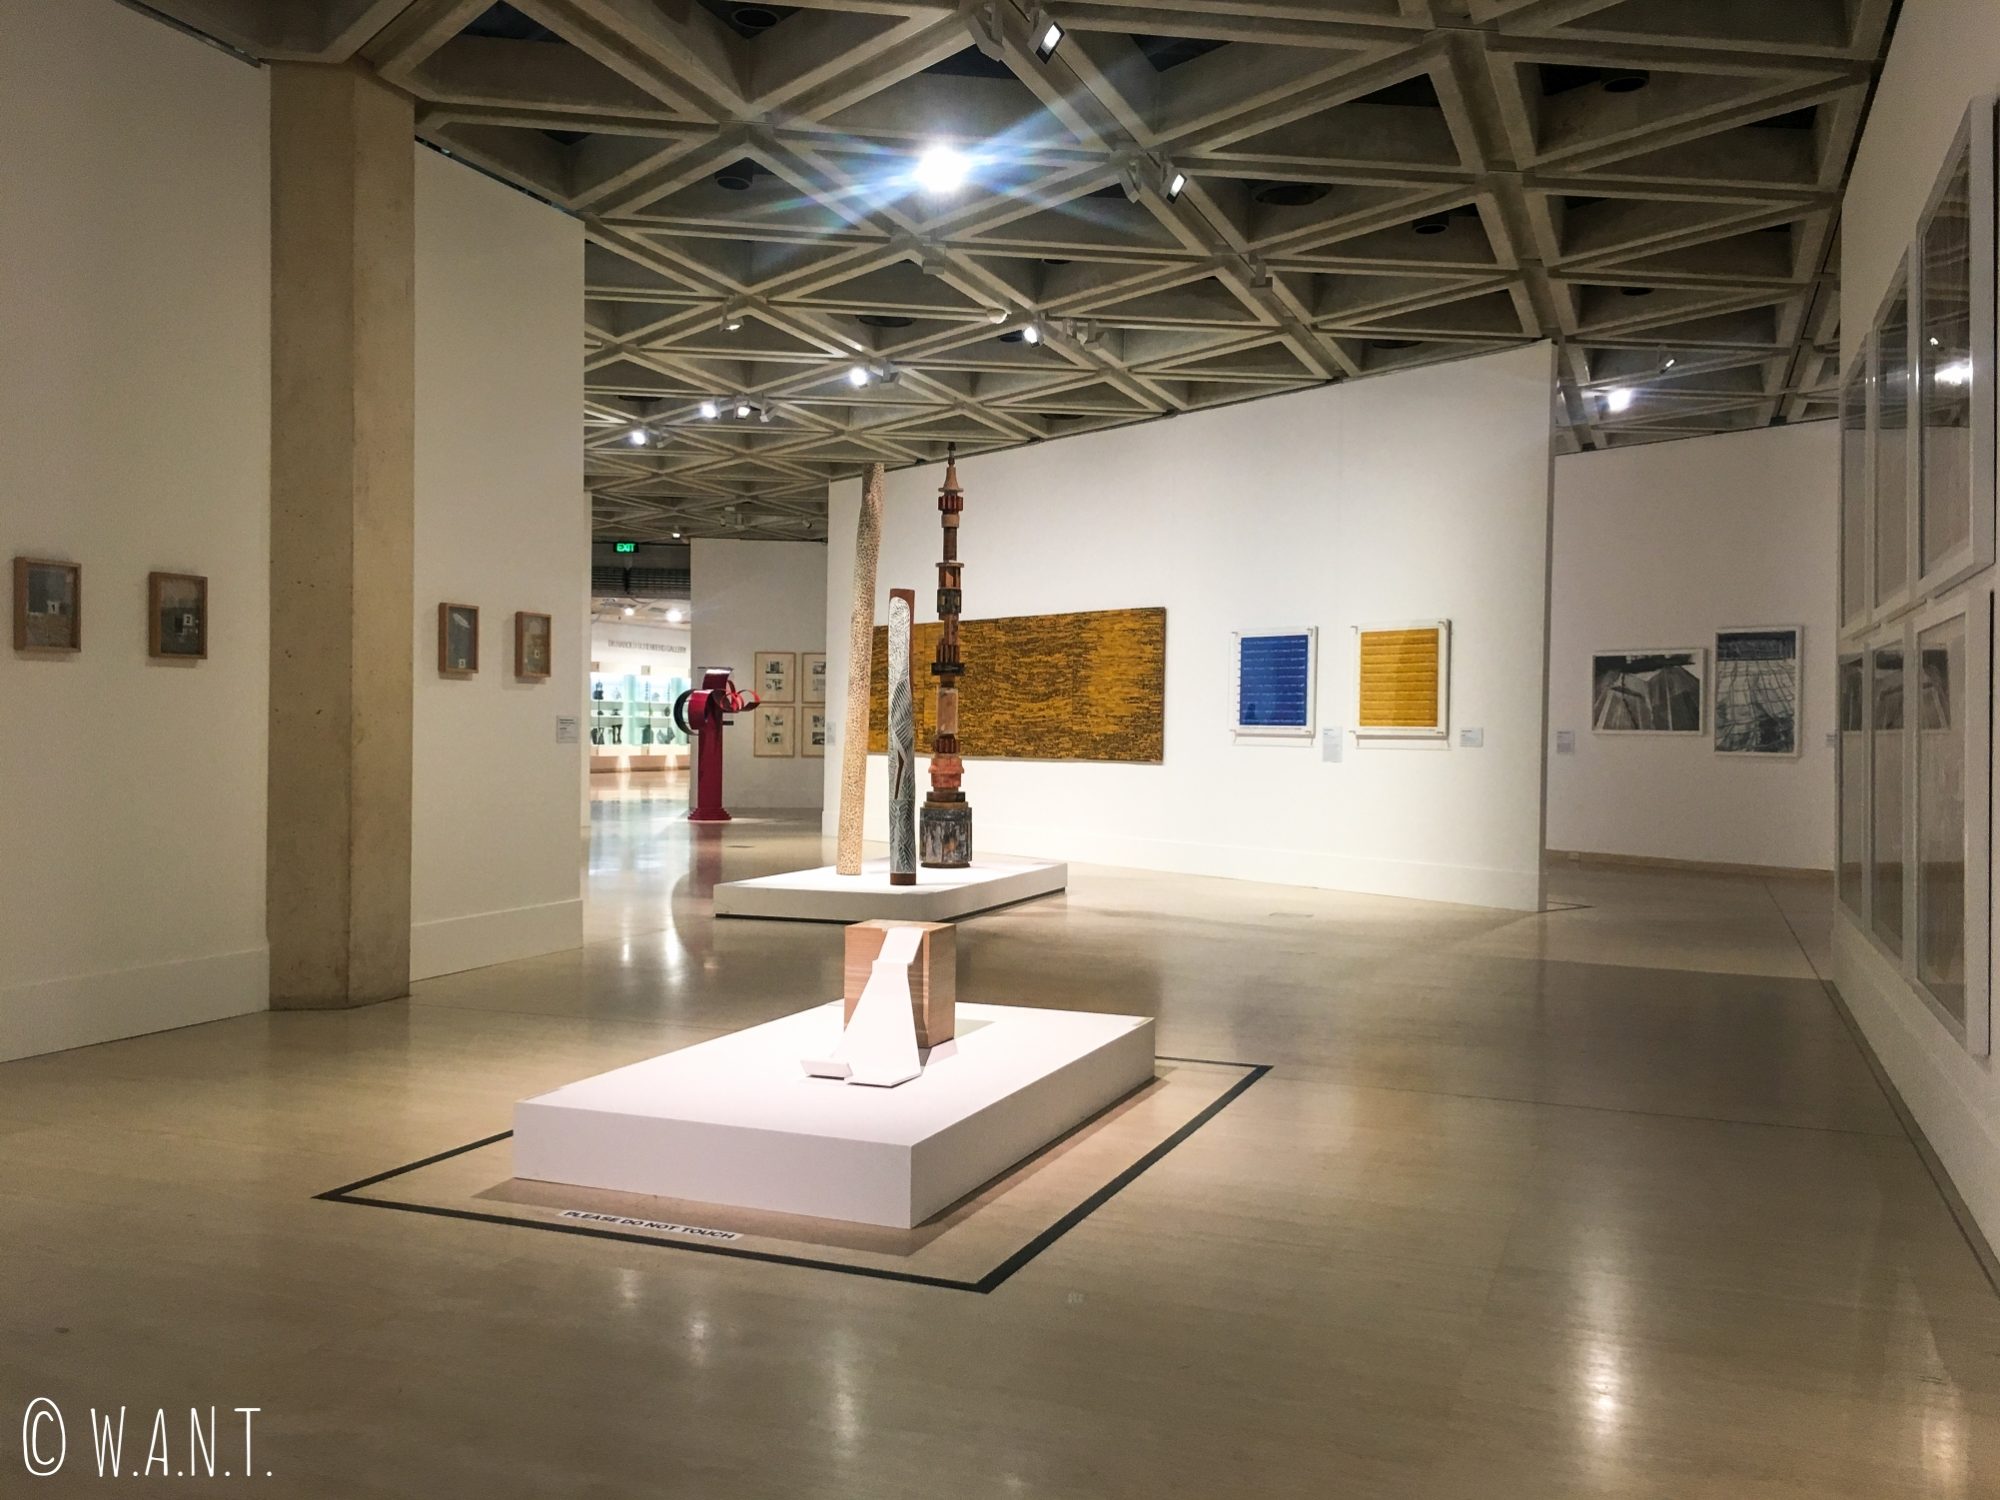 Aile contemporaine du Art Gallery Museum de Perth